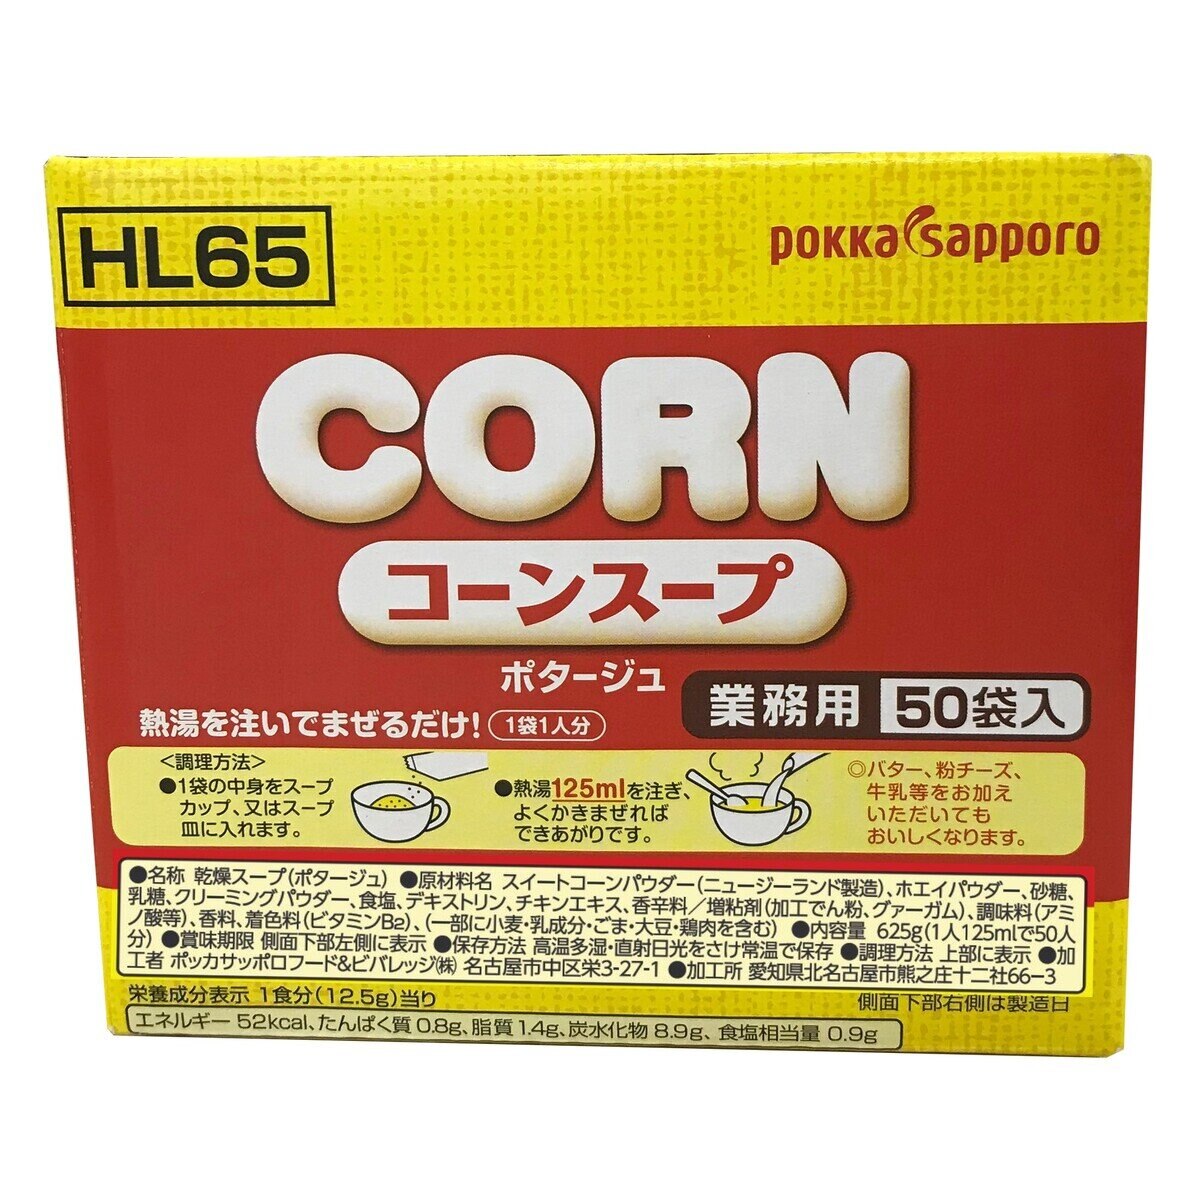 ポッカサッポロ コーンスープ 50袋 | Costco Japan